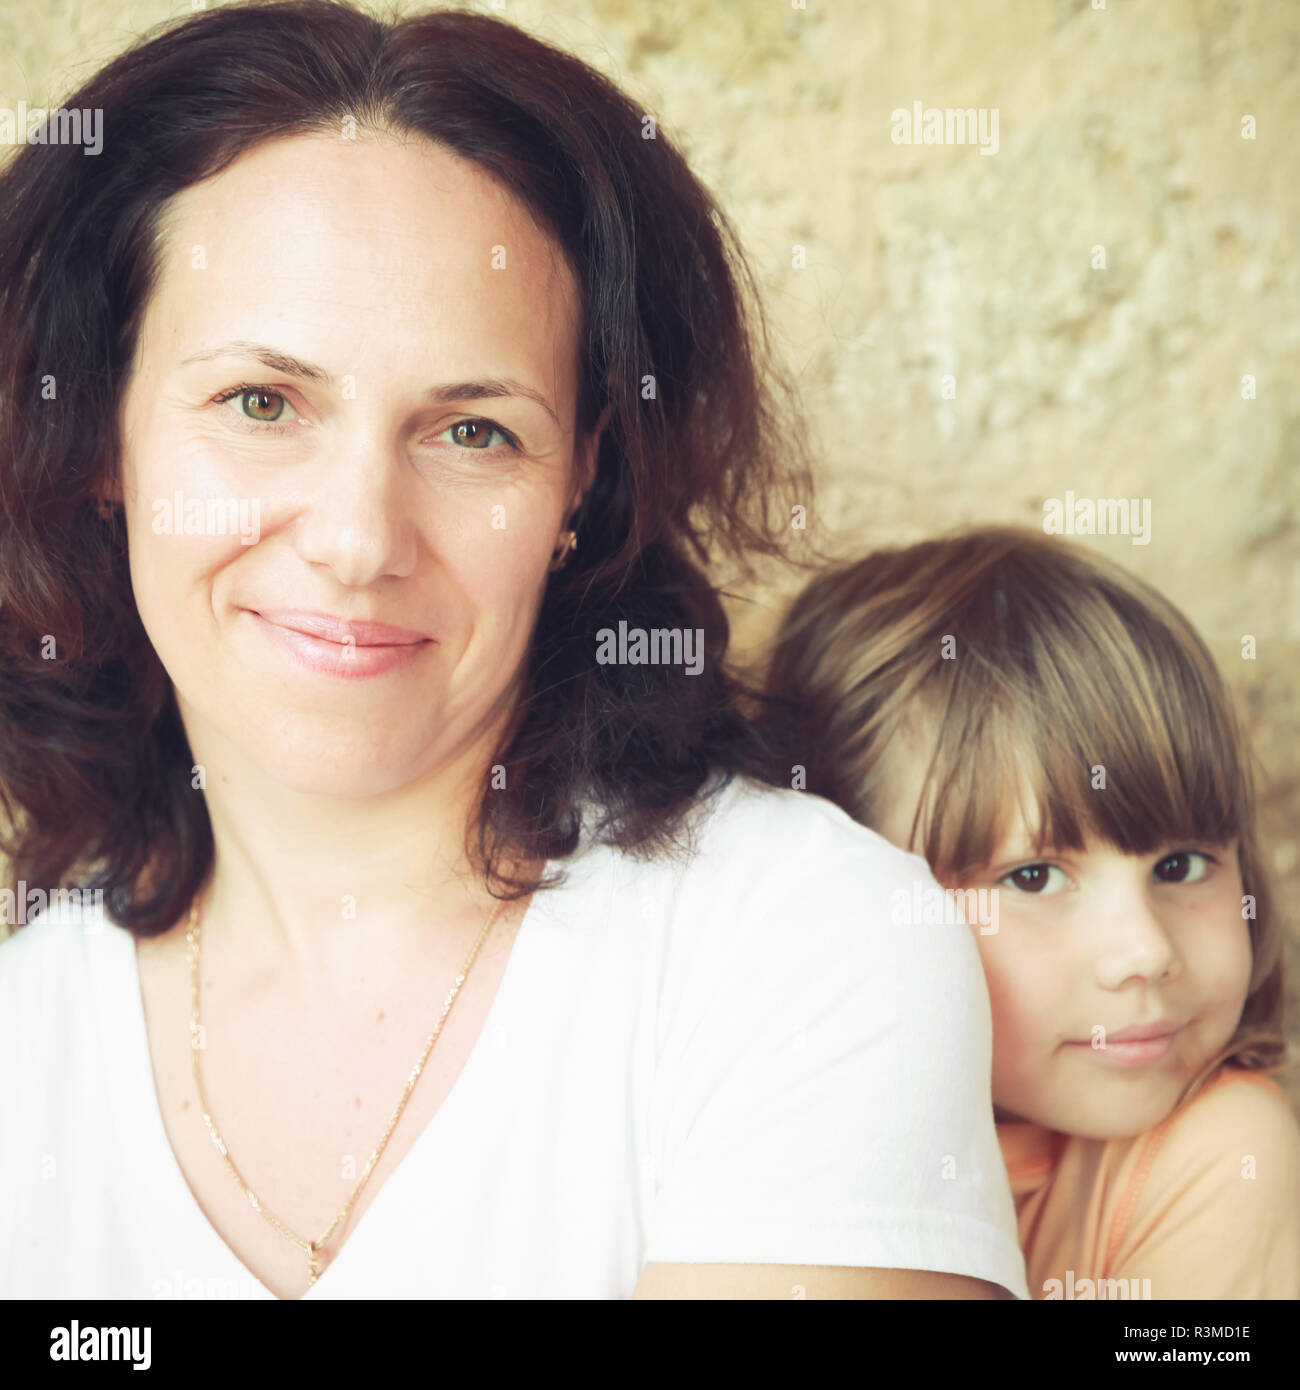 Smiling young adult Caucasian mother avec sa petite fille, close-up portrait. Vintage photo carré stylisé avec effet de filtre de correction tonale, j Banque D'Images